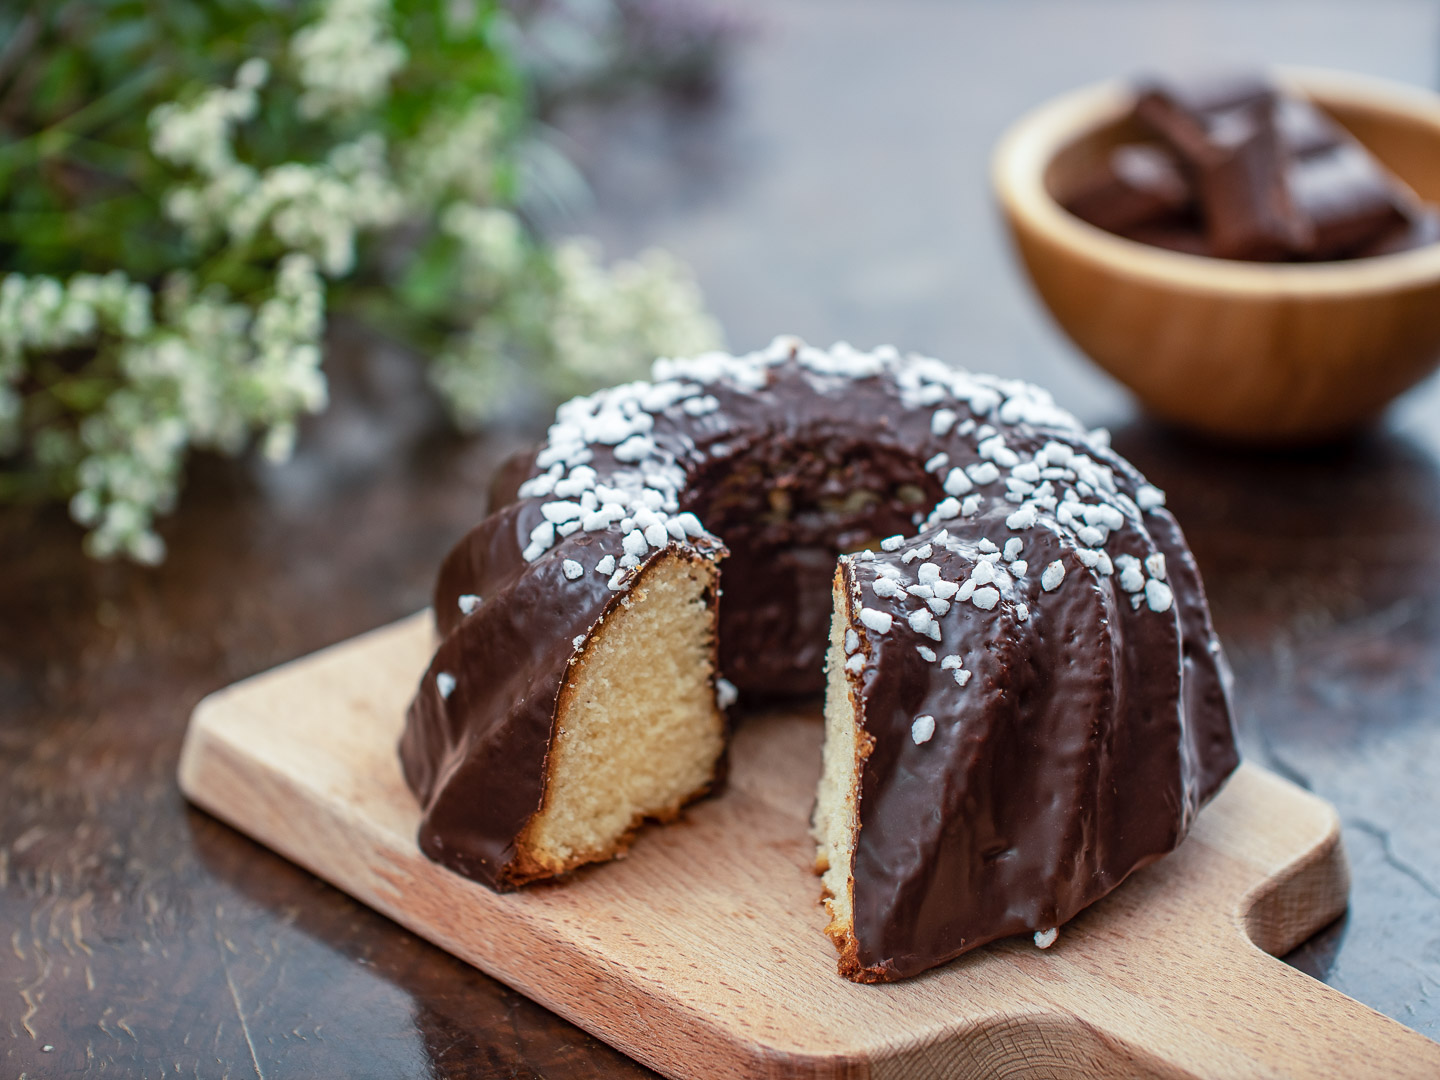 A garnished, dark-coated rustic Bundt Cake